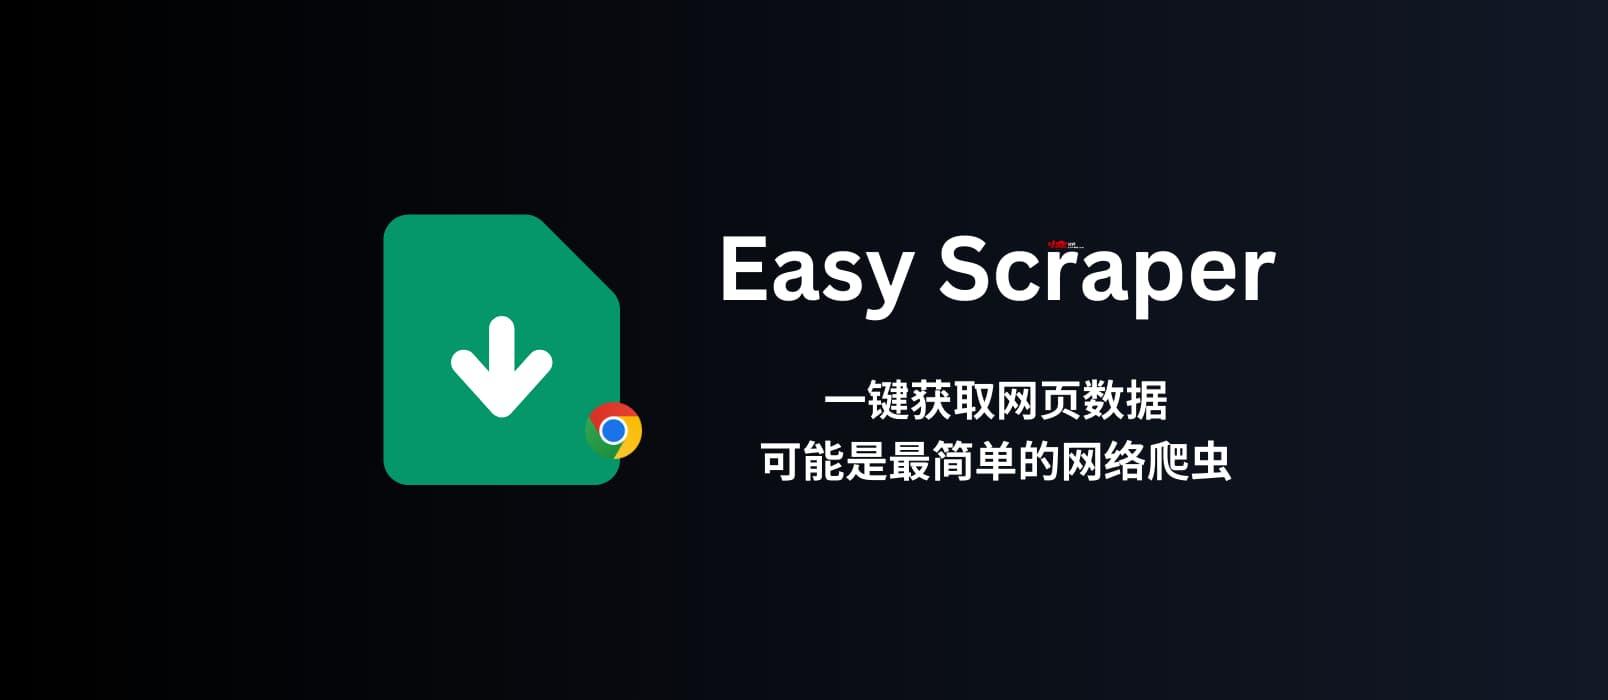 Easy Scraper - プログラミング不要のビジュアルウェブスクレイパー、ワンクリックでウェブデータを取得できるかもしれない最も簡単なウェブスクレイパー [Chrome] 1